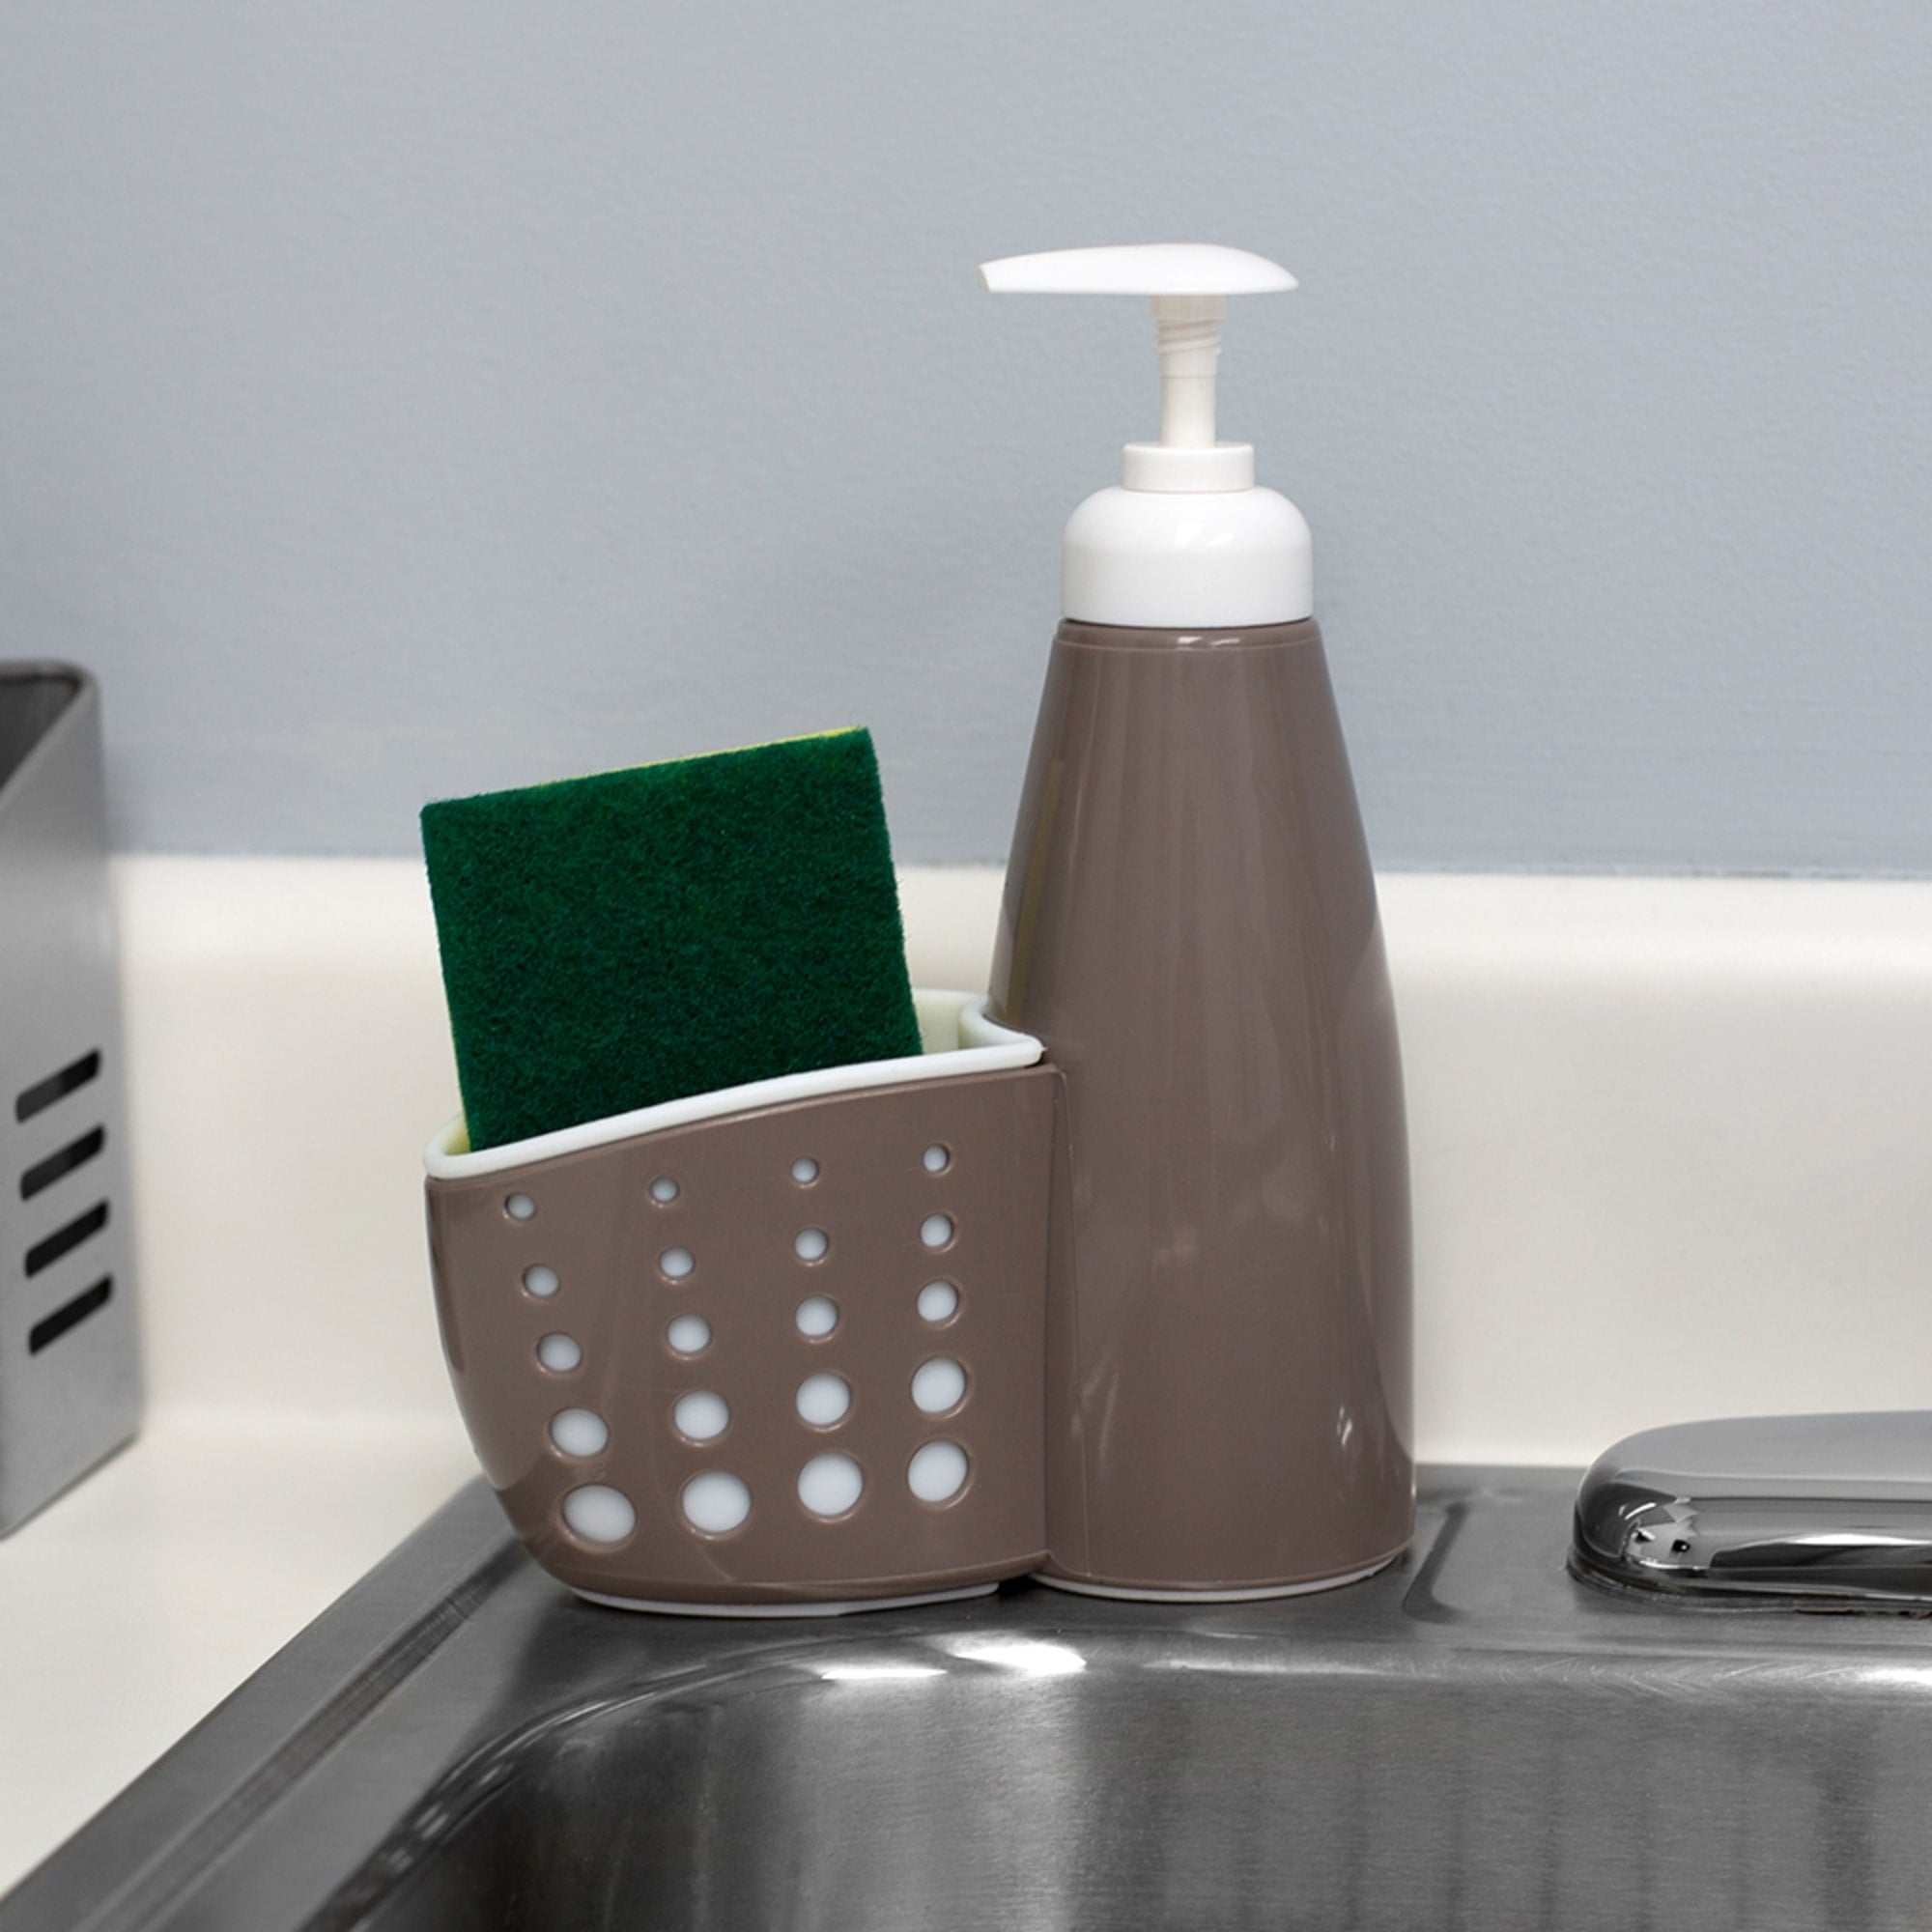 Casabella Sink Sider faucet sponge holder grey